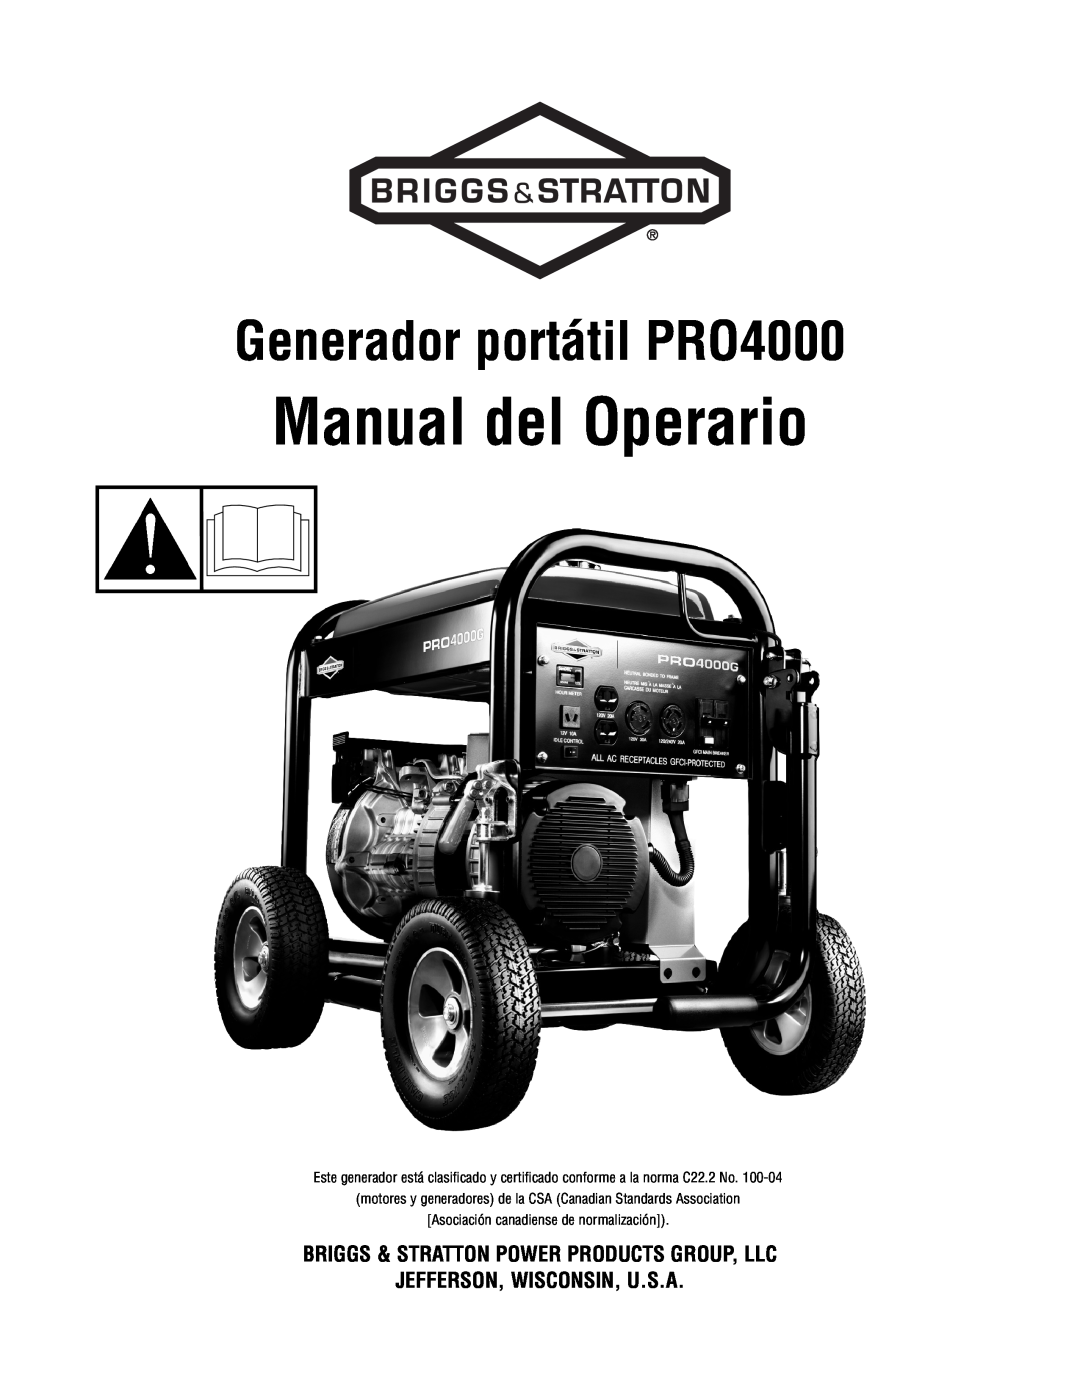 Briggs & Stratton manual Manual del Operario, Generador portátil PRO4000, Briggs & Stratton Power Products Group, Llc 